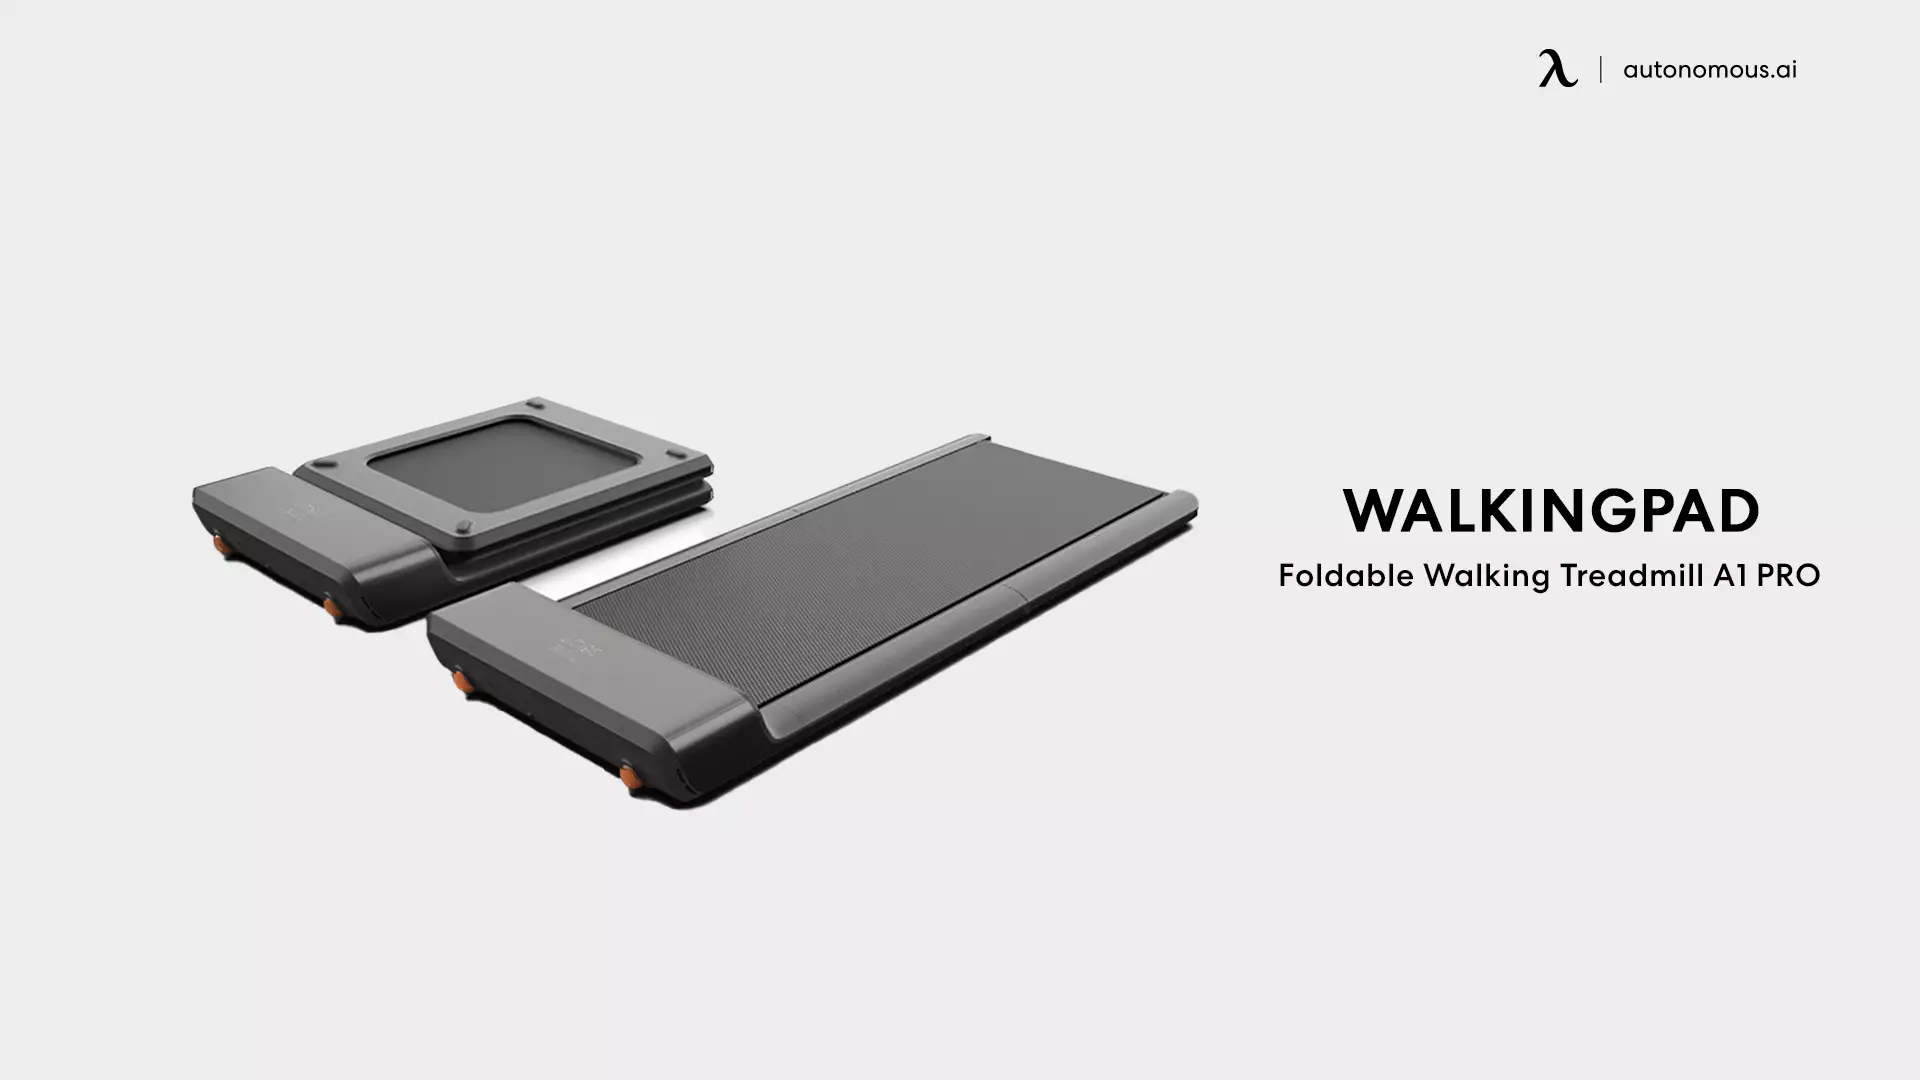 Foldable Walking Treadmill A1 PRO by WalkingPad